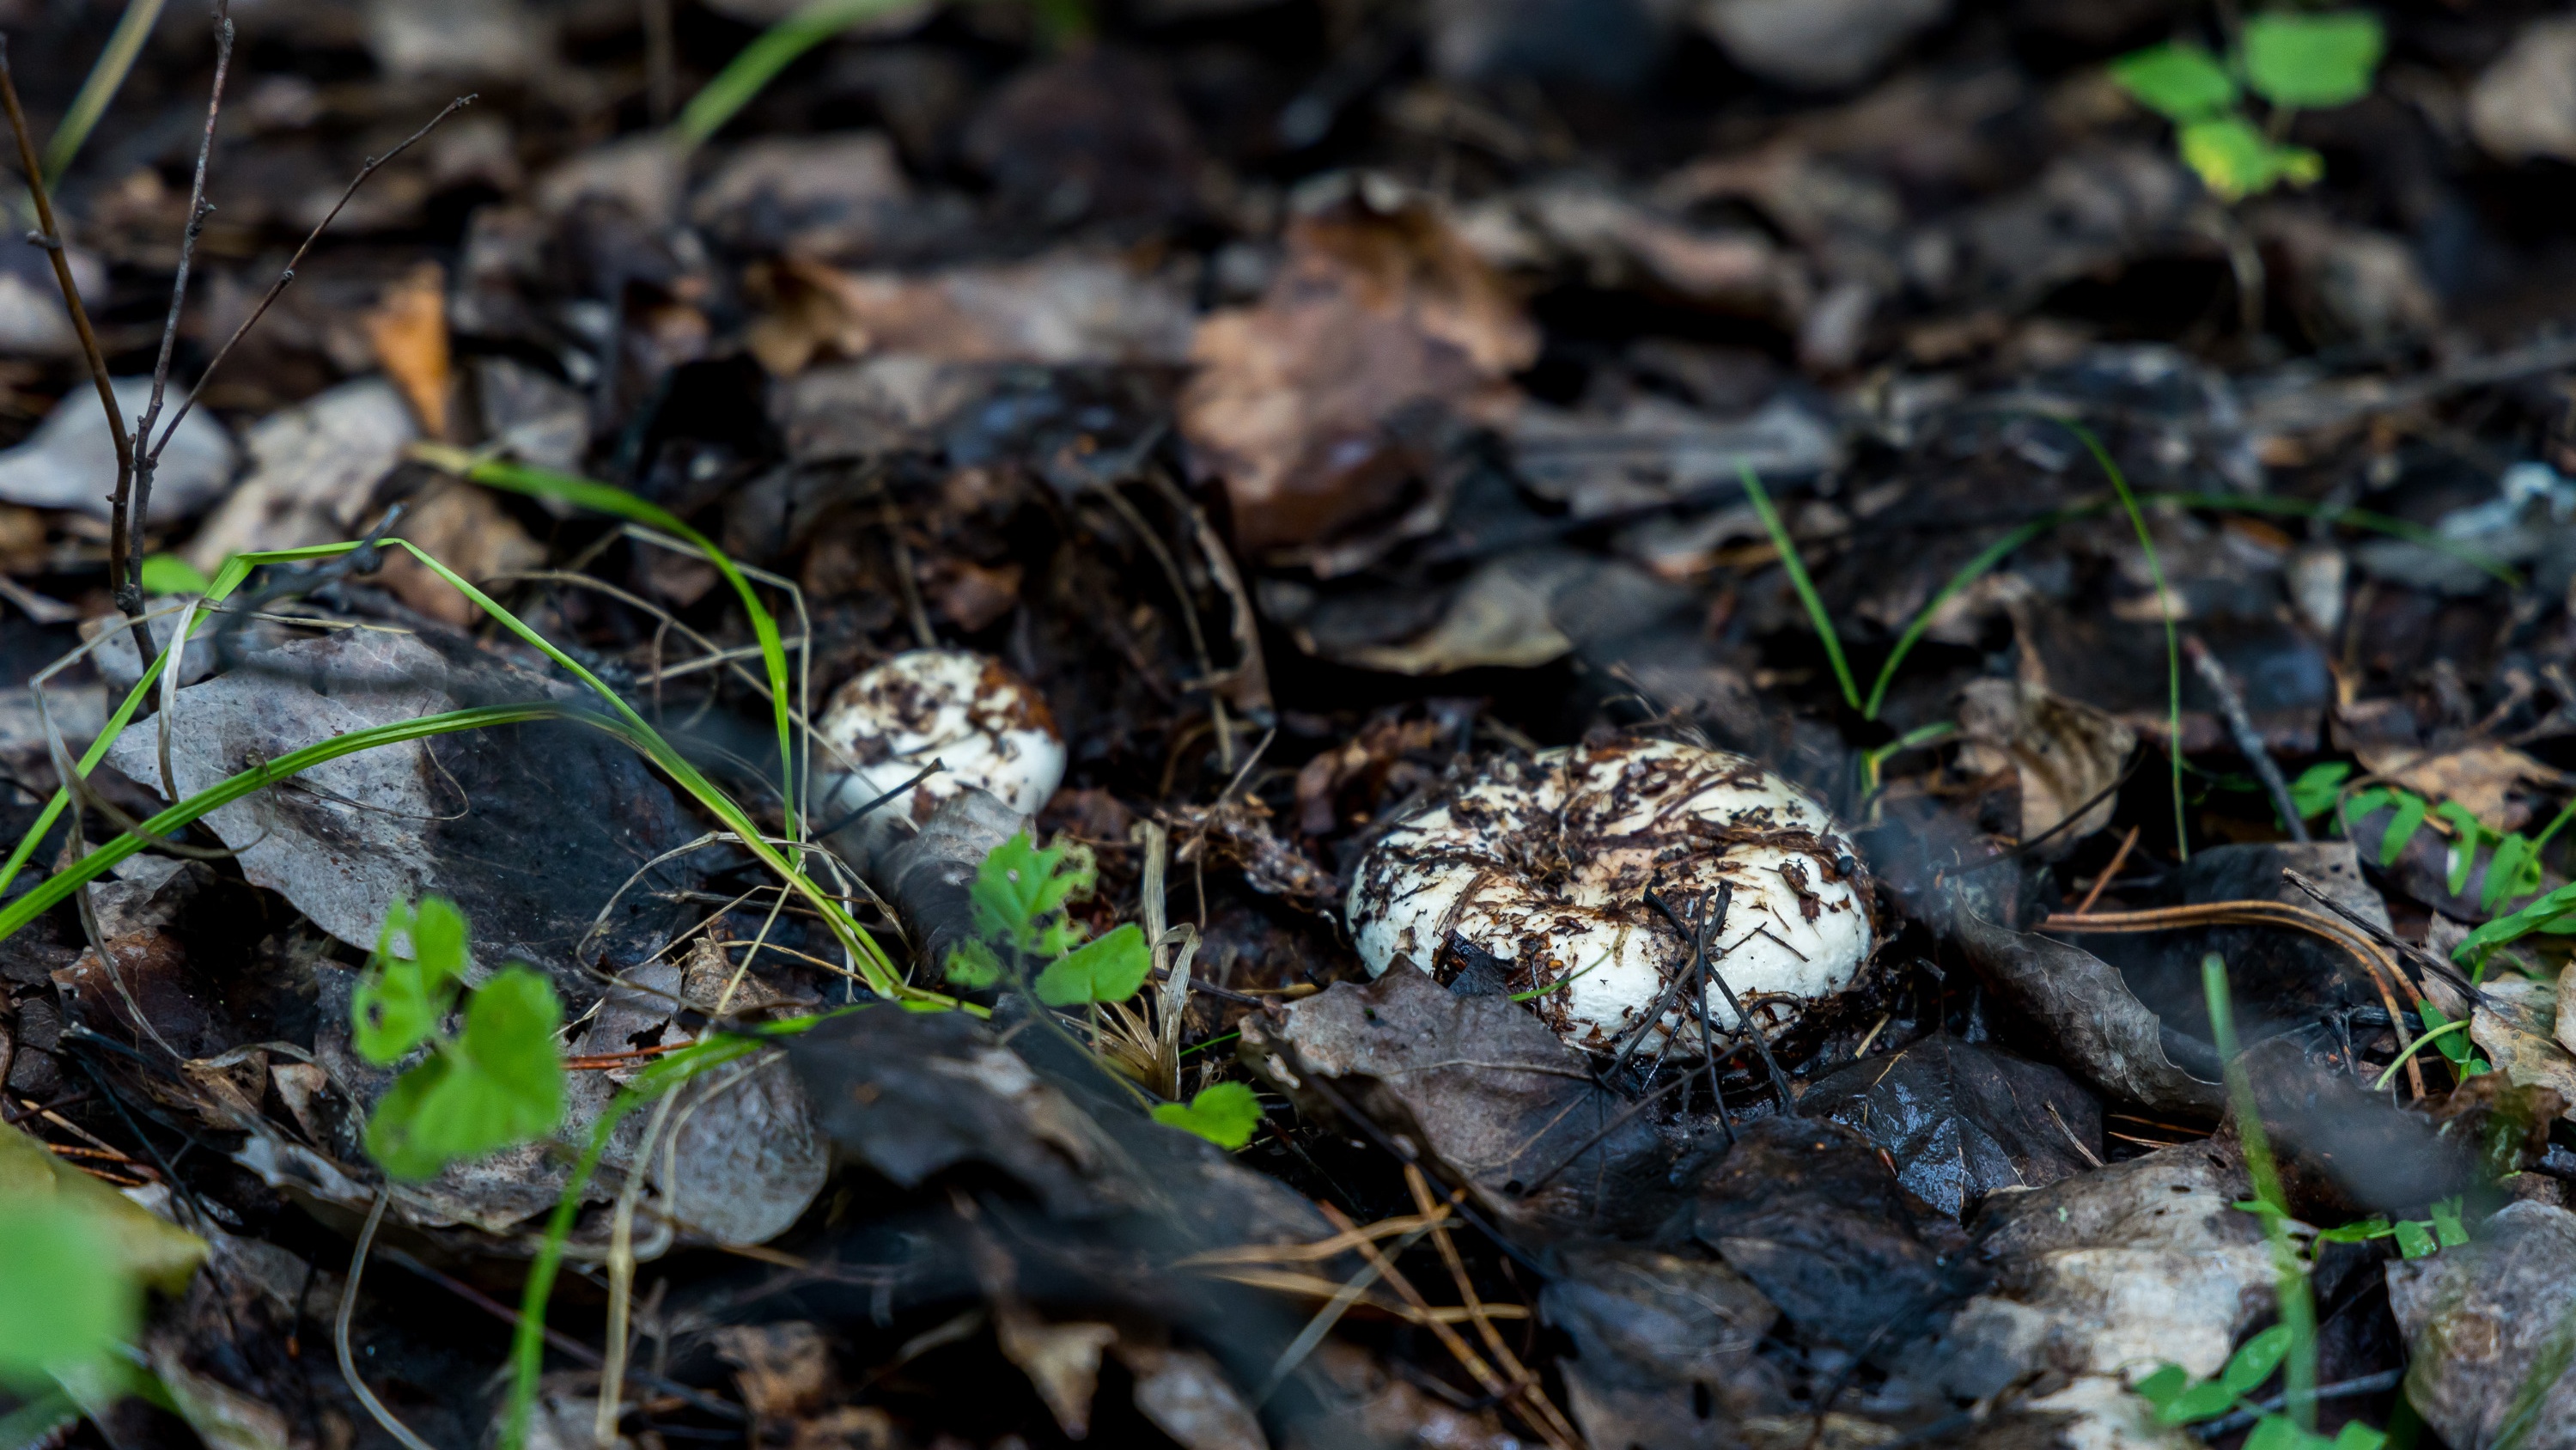 «Зря люди не собирают эти грибы»: сходили в лес с опытным грибником и записали полезное видео